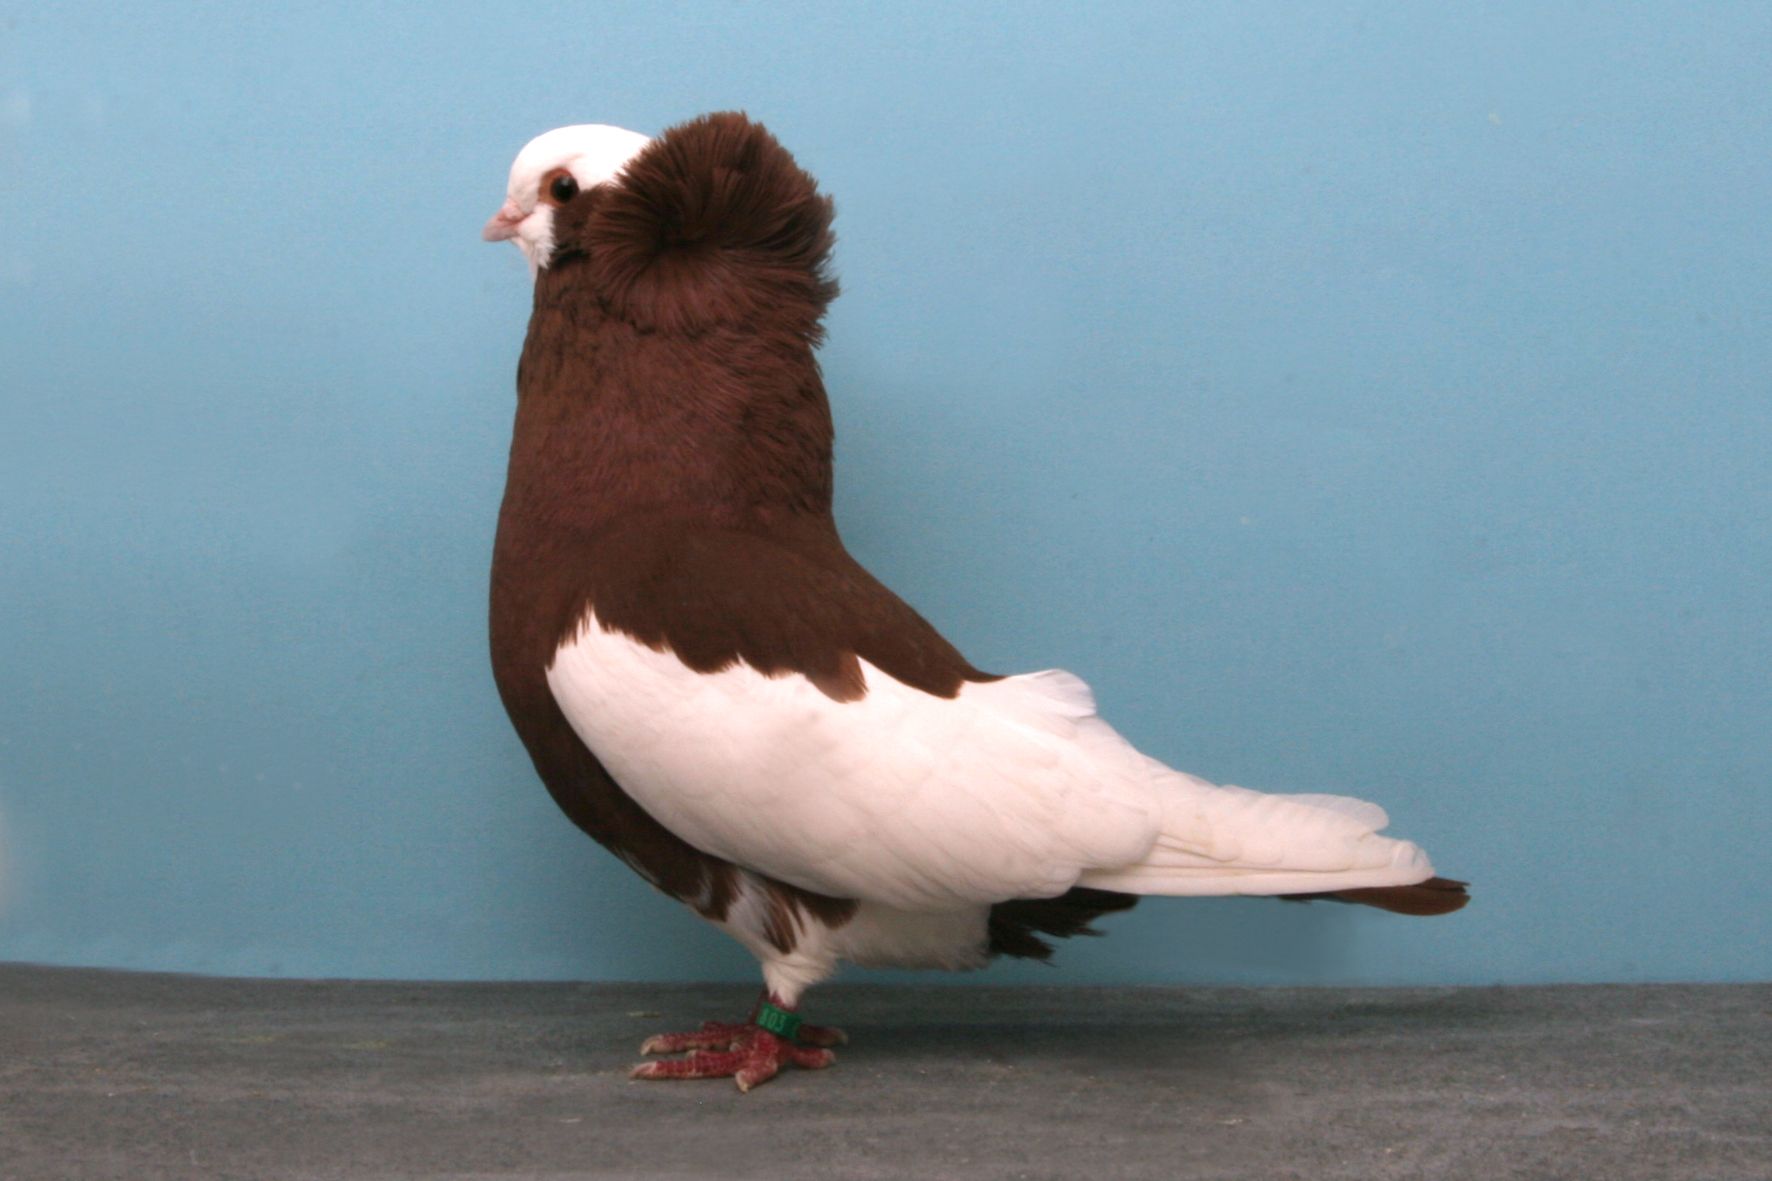 Породы голубей - разведение и содержание голубей - птицеводство - собственник